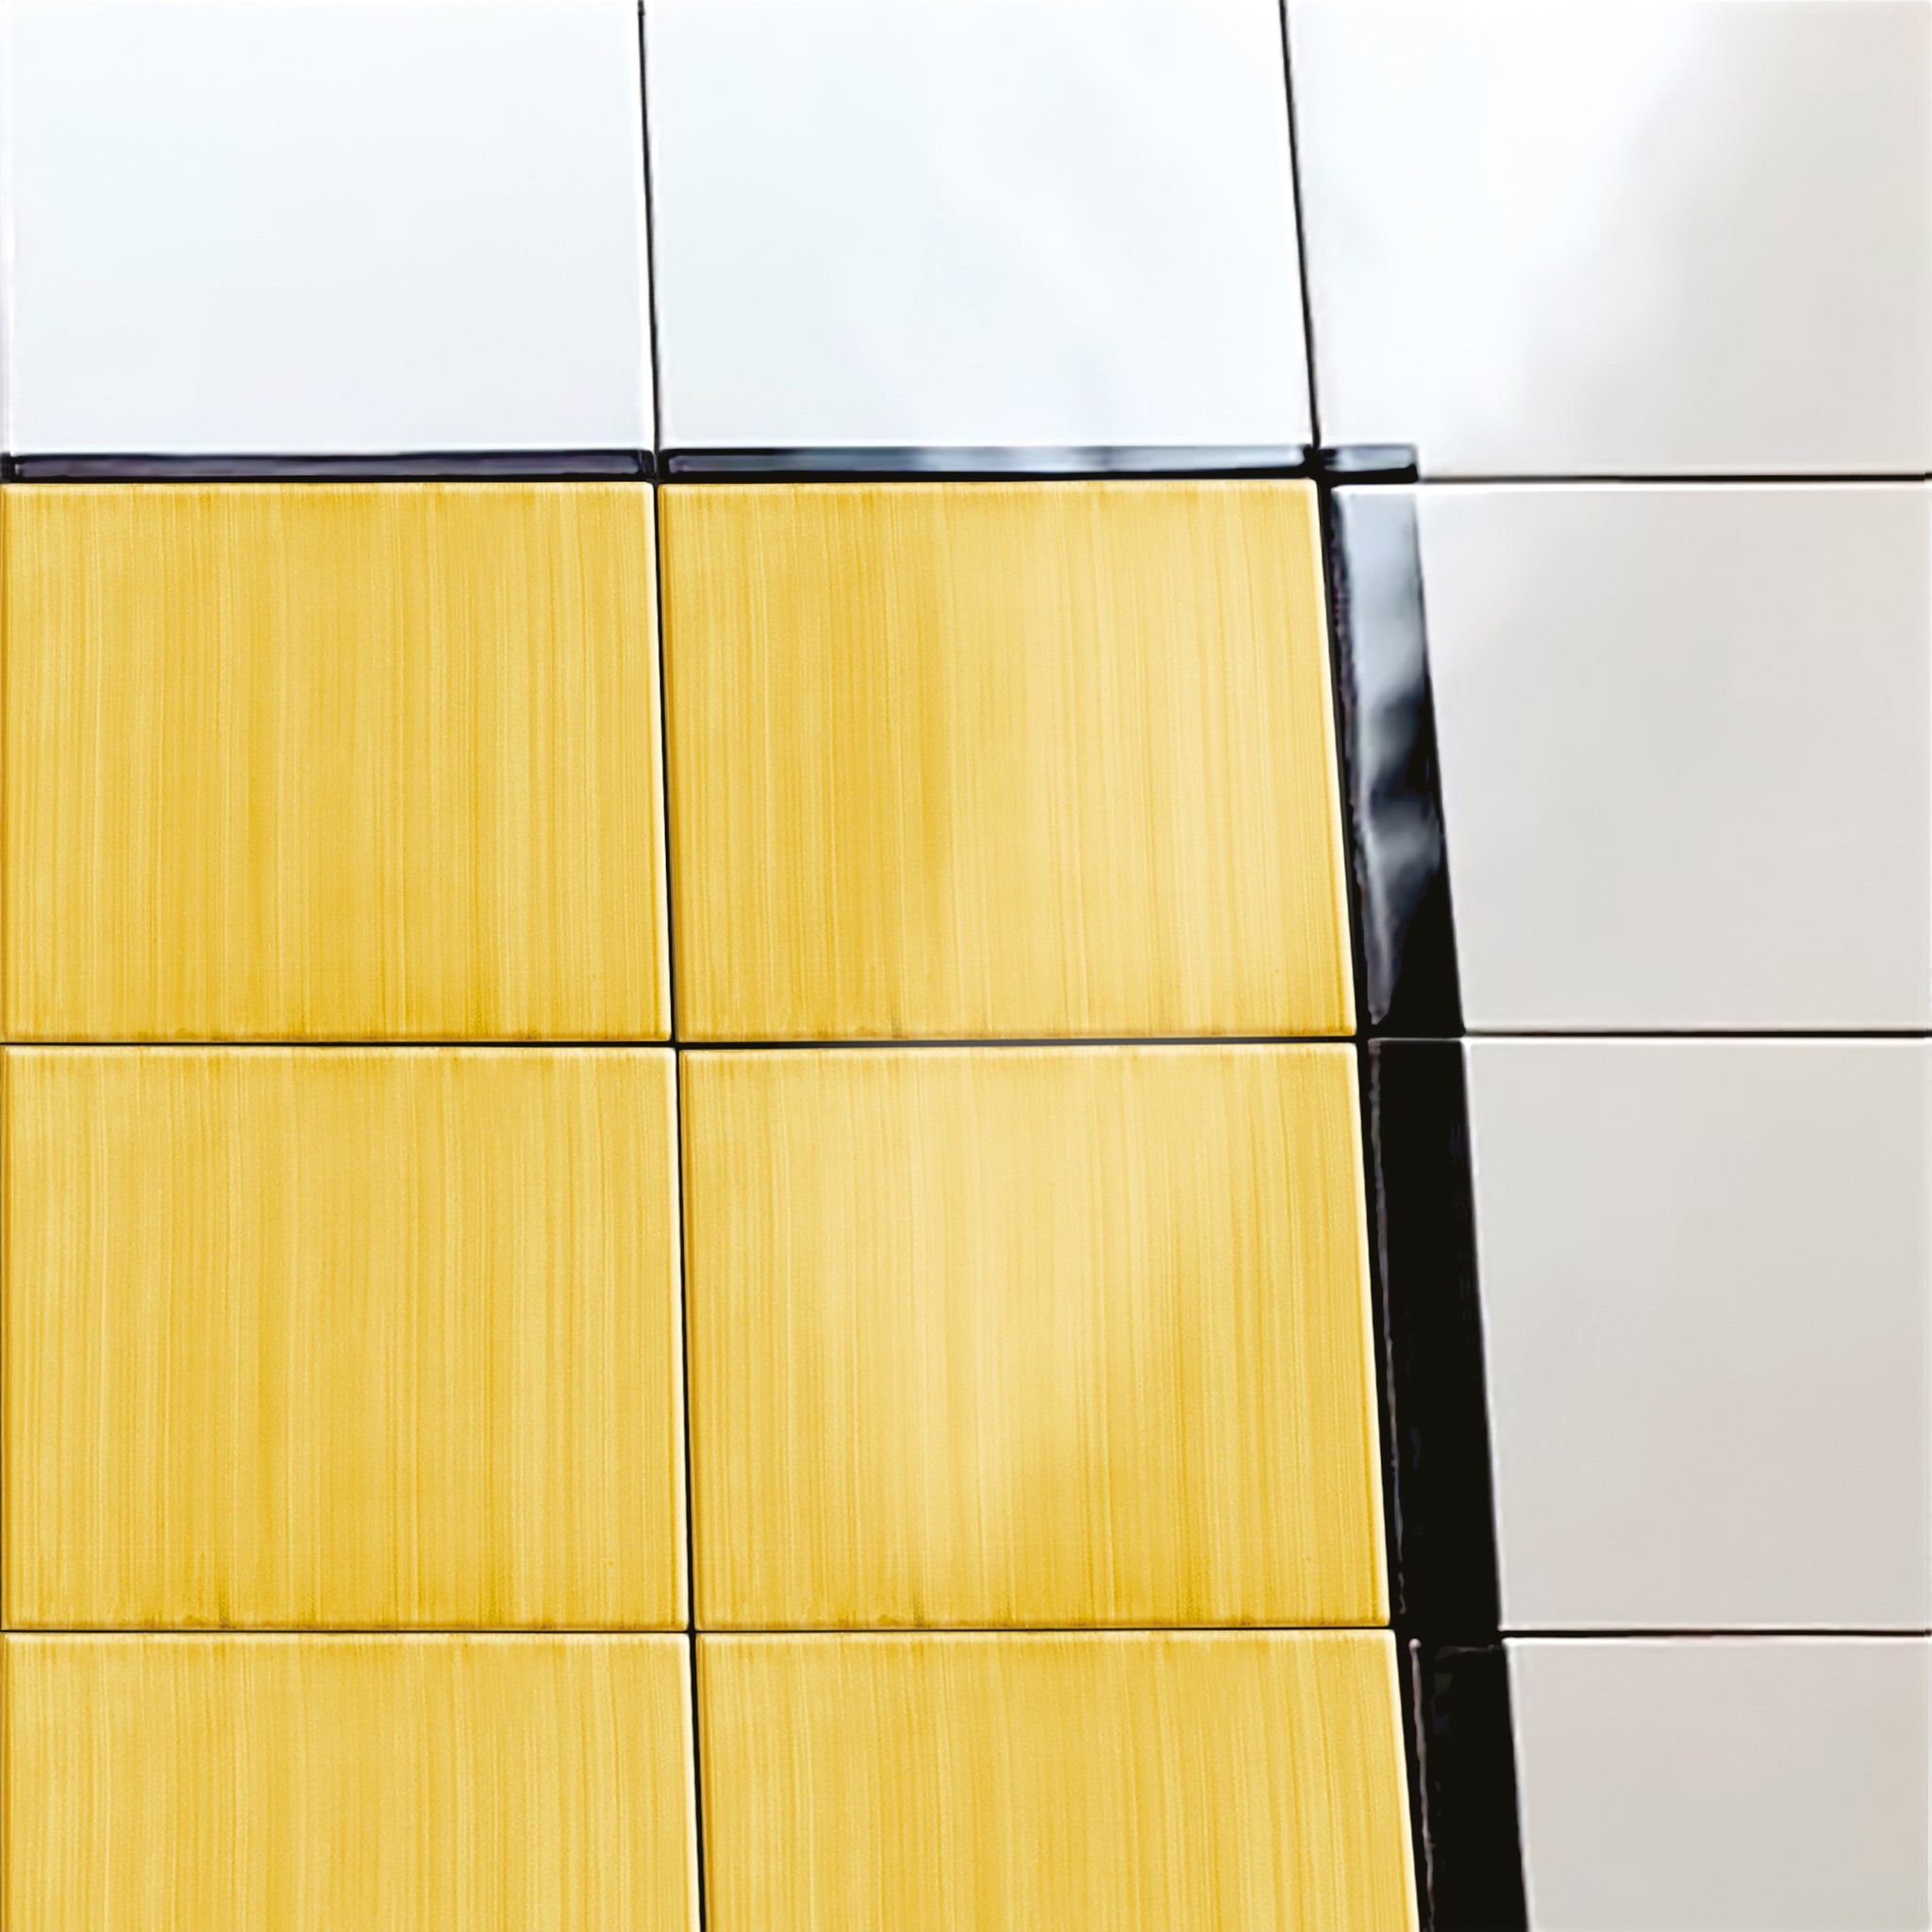 Carpet Total Yellow Ceramic Composition by Giuliano Andrea dell’Uva 120 X 60 - Alternative view 2